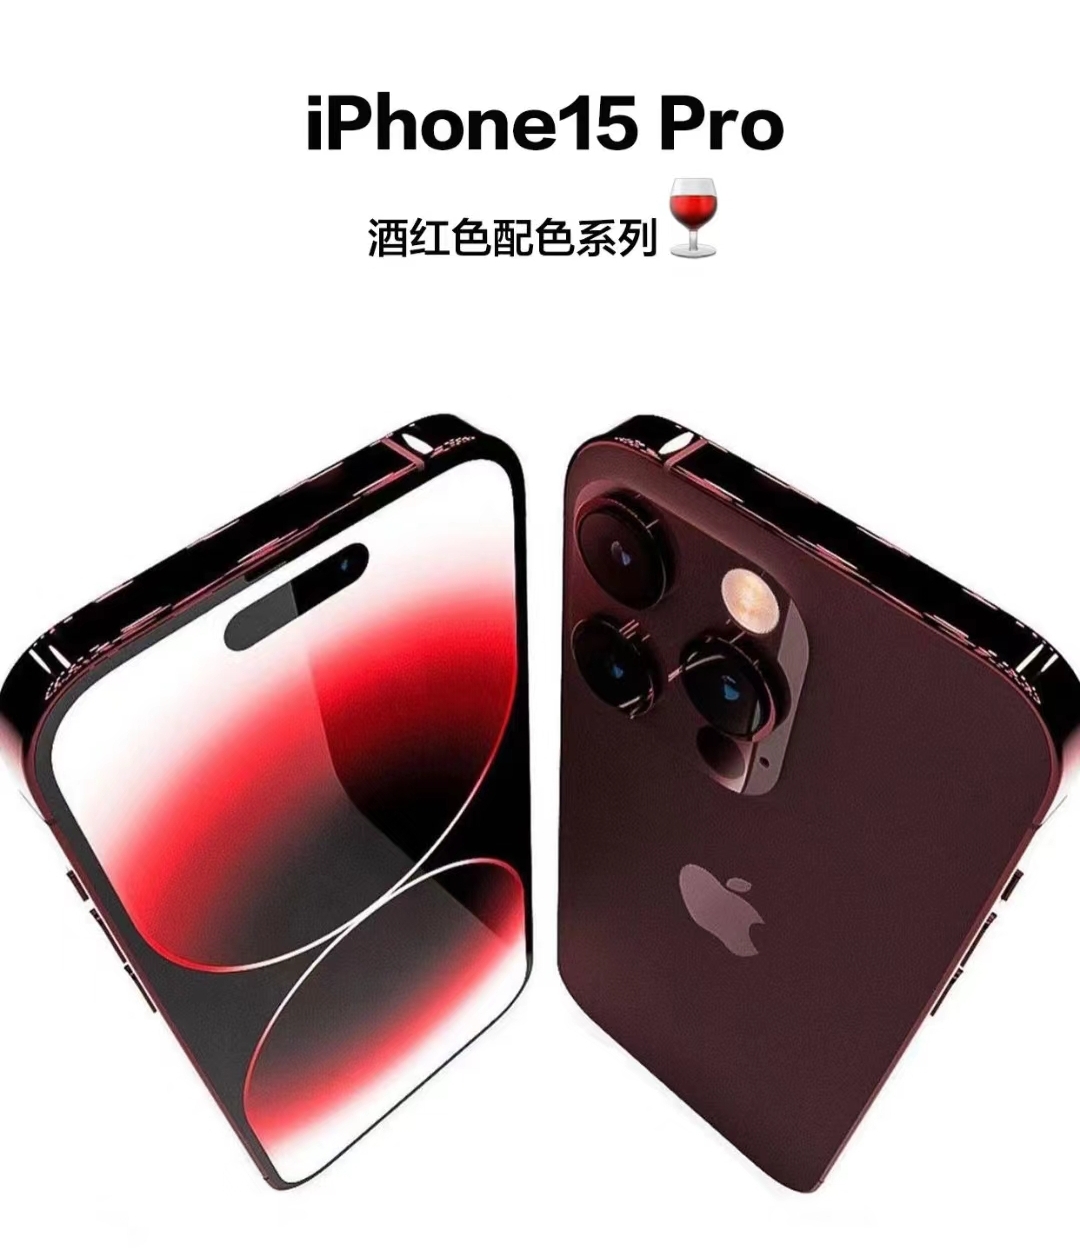 iPhone 15 Pro系列预定